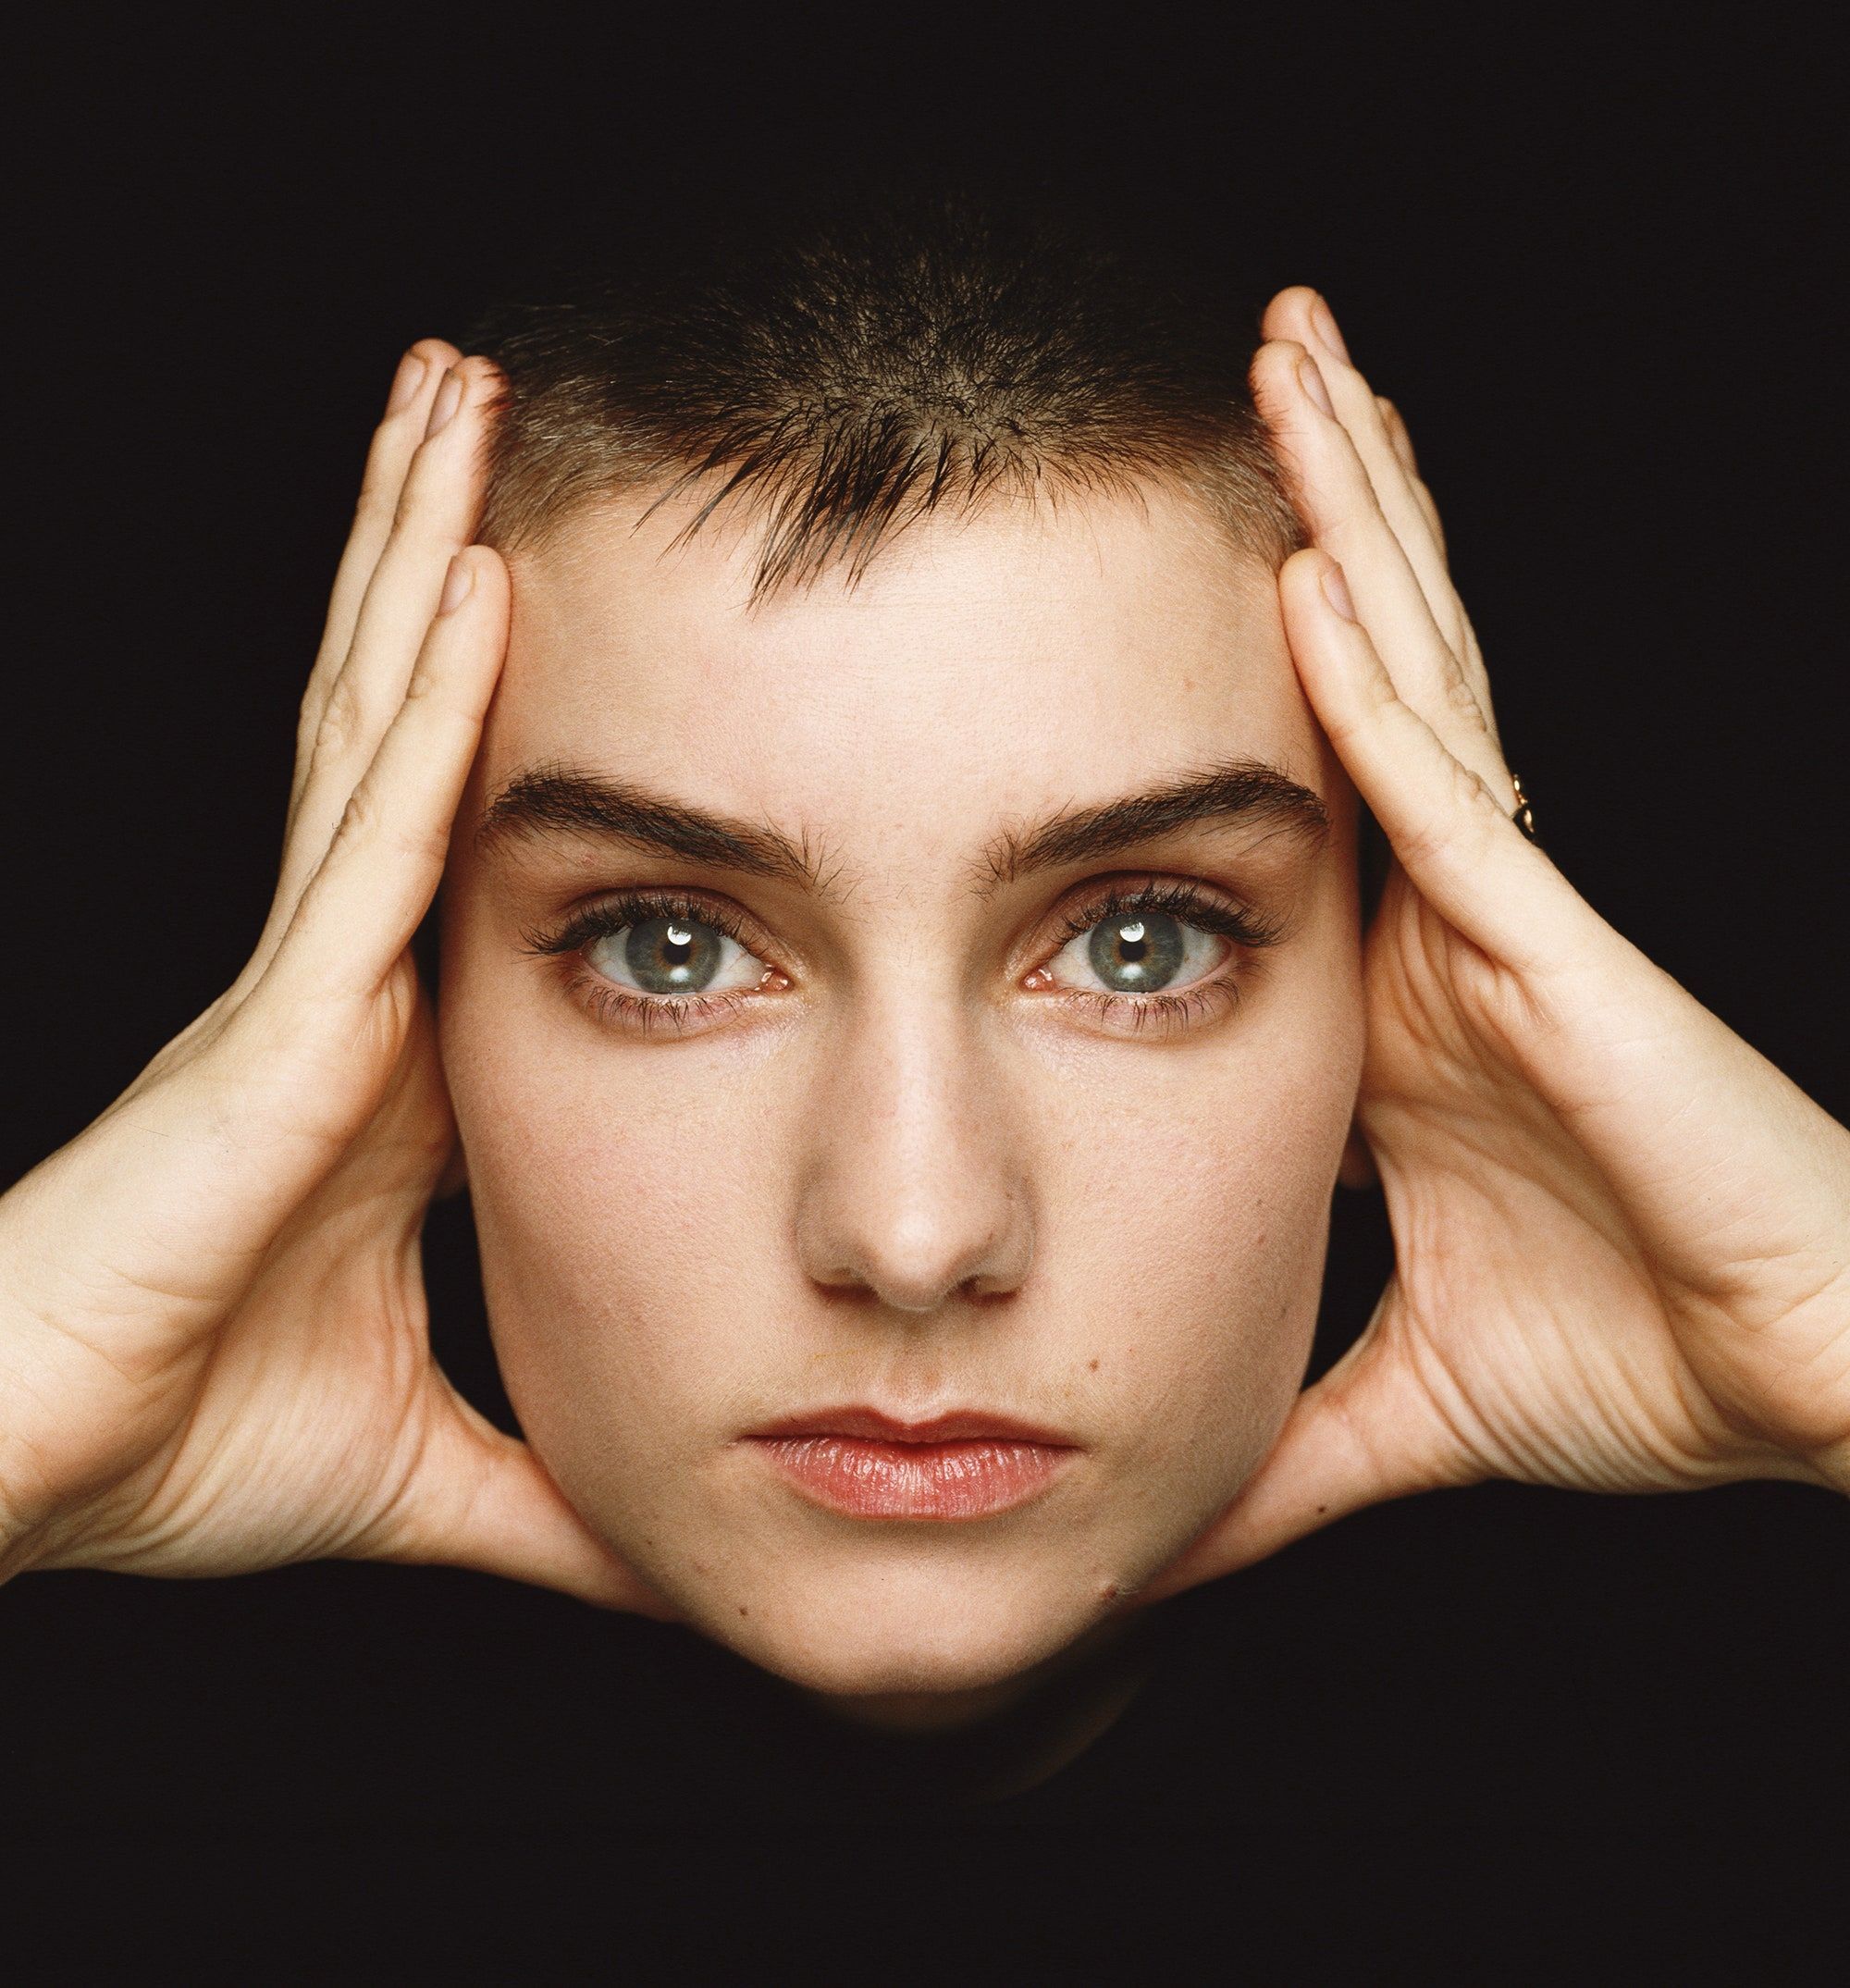 “Sarà una vita costellata di addii”. Sinéad O’Connor, il libro